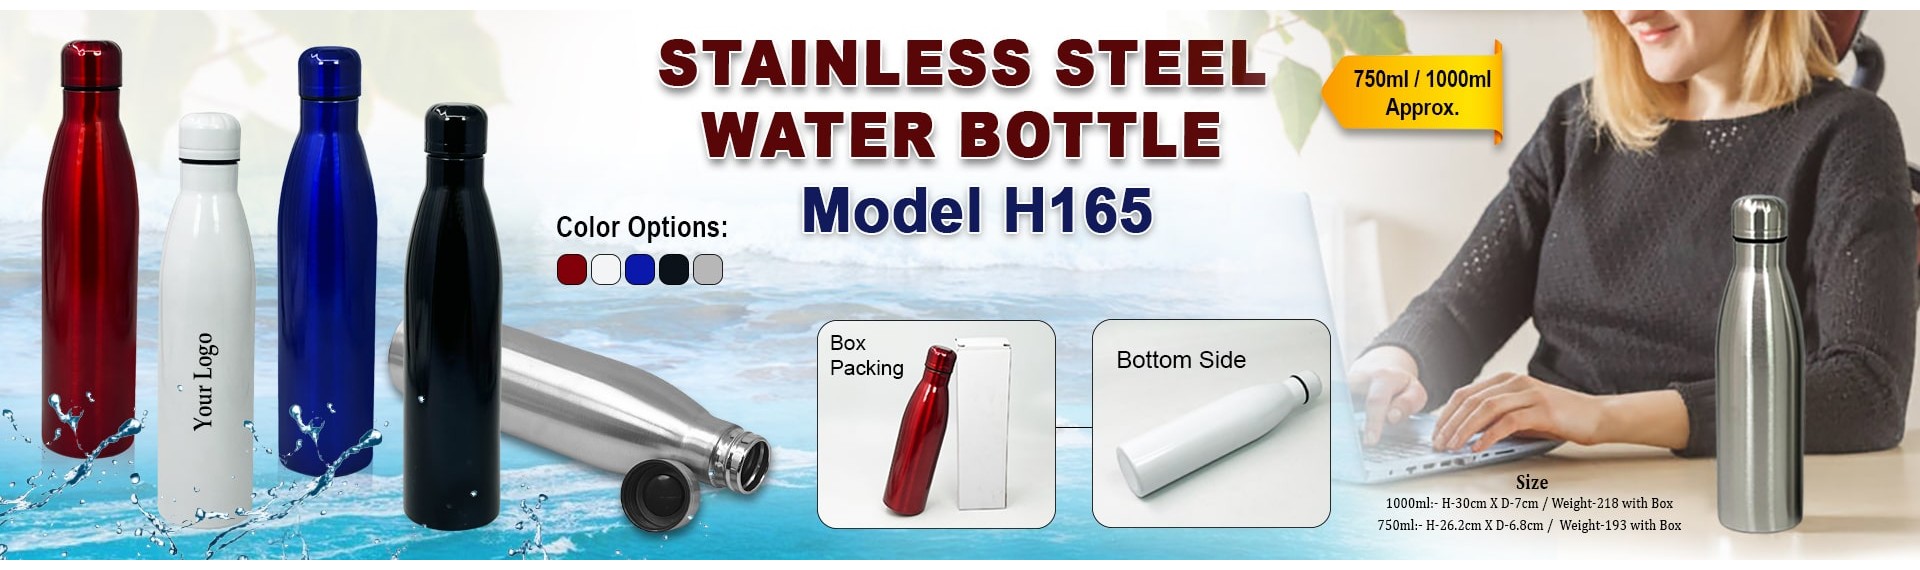 Steel Water Bottle H165